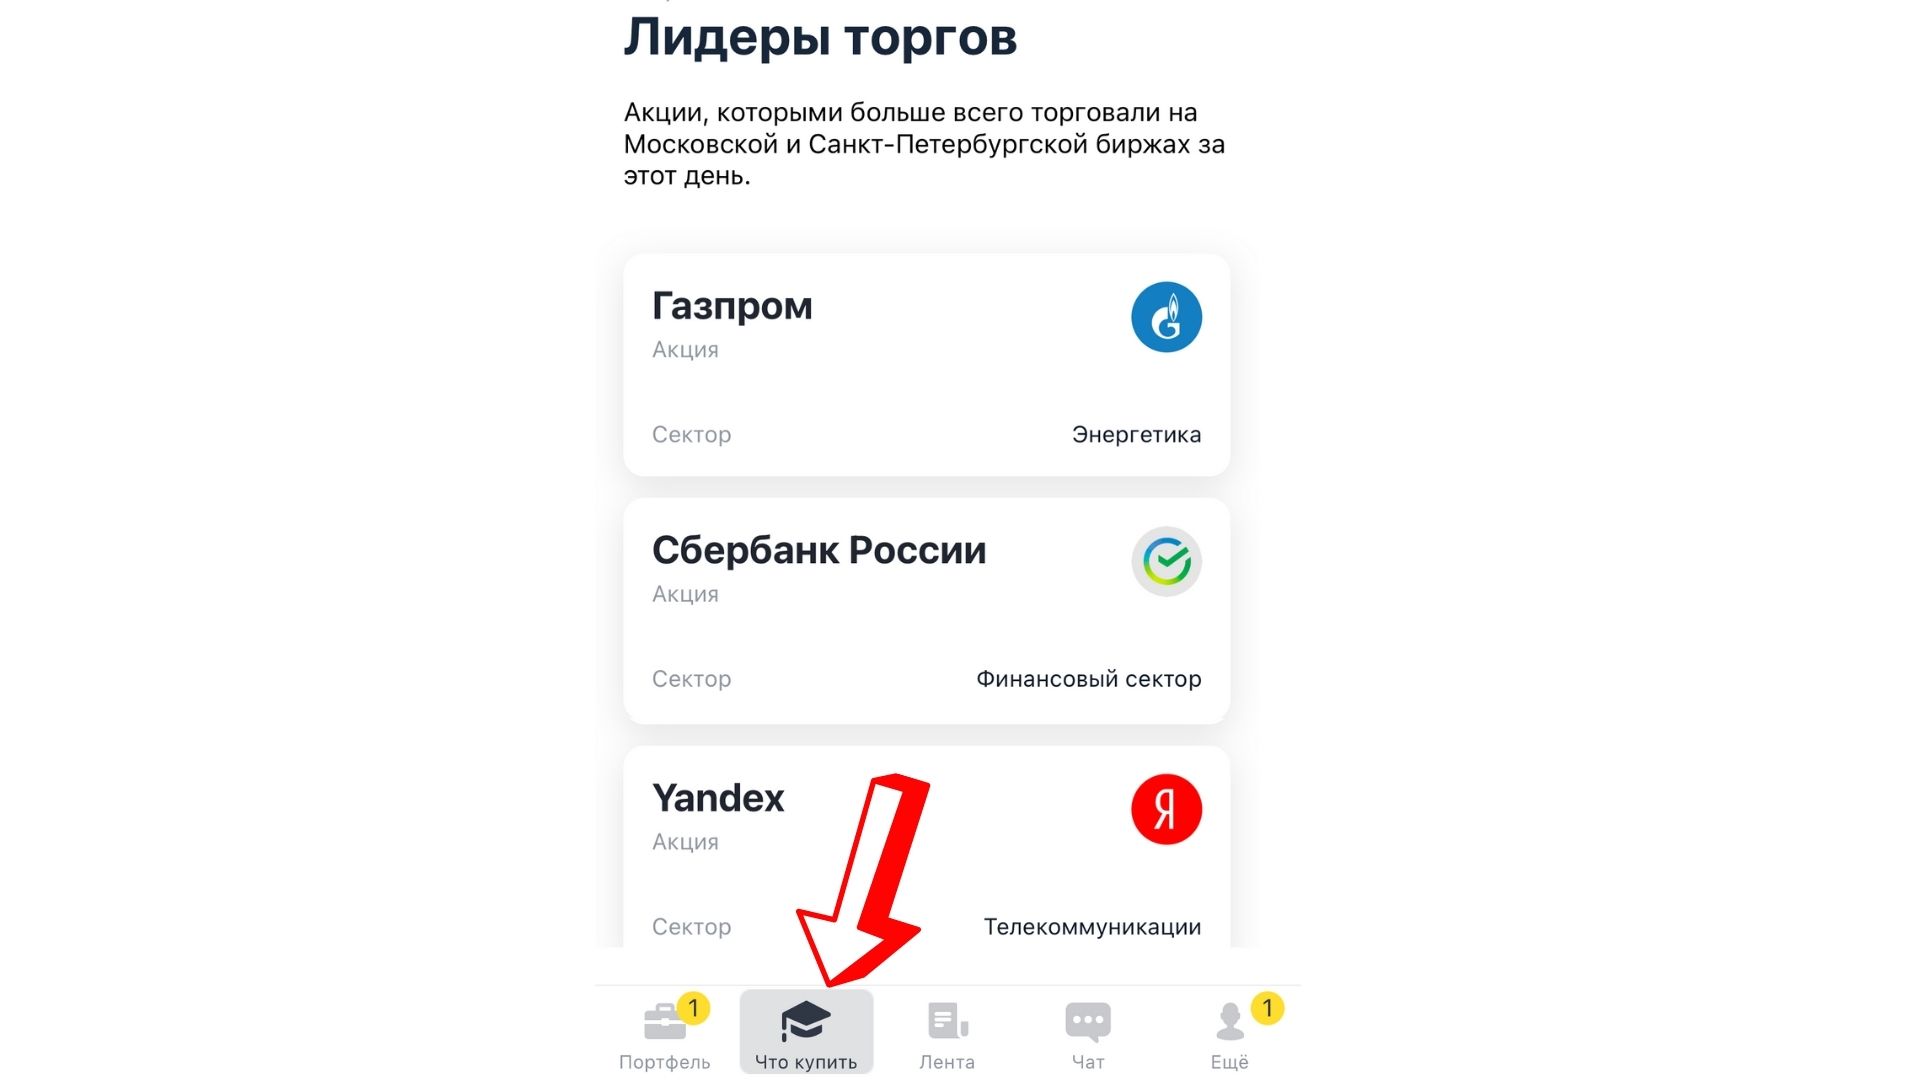 Как купить акции Яндекса физическому лицу. Инструкция по шагам